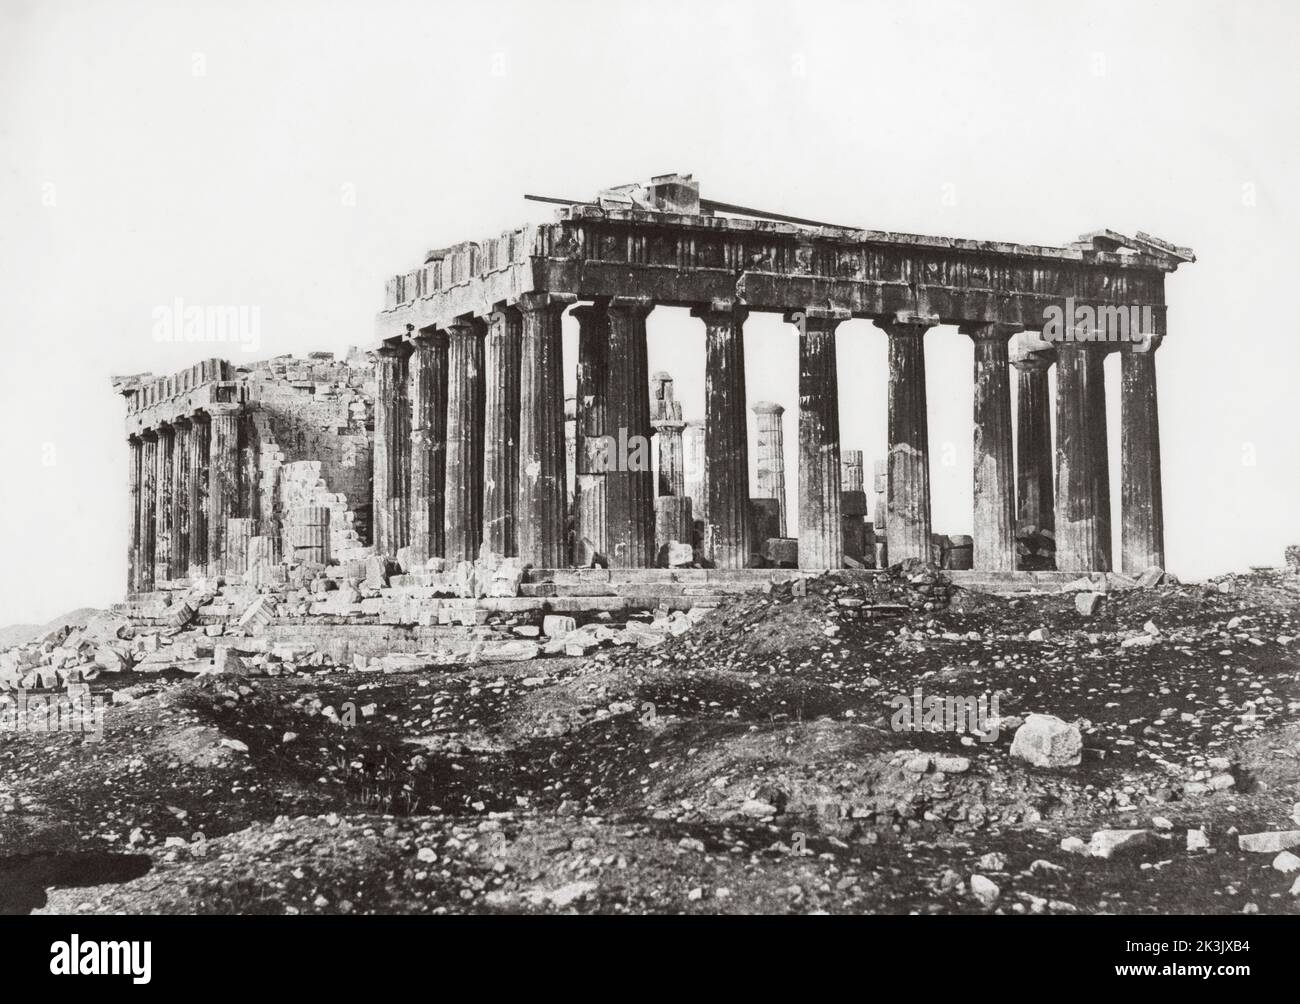 Le Parthénon sur l'Acropole, Athènes, Grèce, vers 1850. Peut-être après une œuvre du journaliste et photographe français Eugene Piot, 1812 - 1890 Banque D'Images